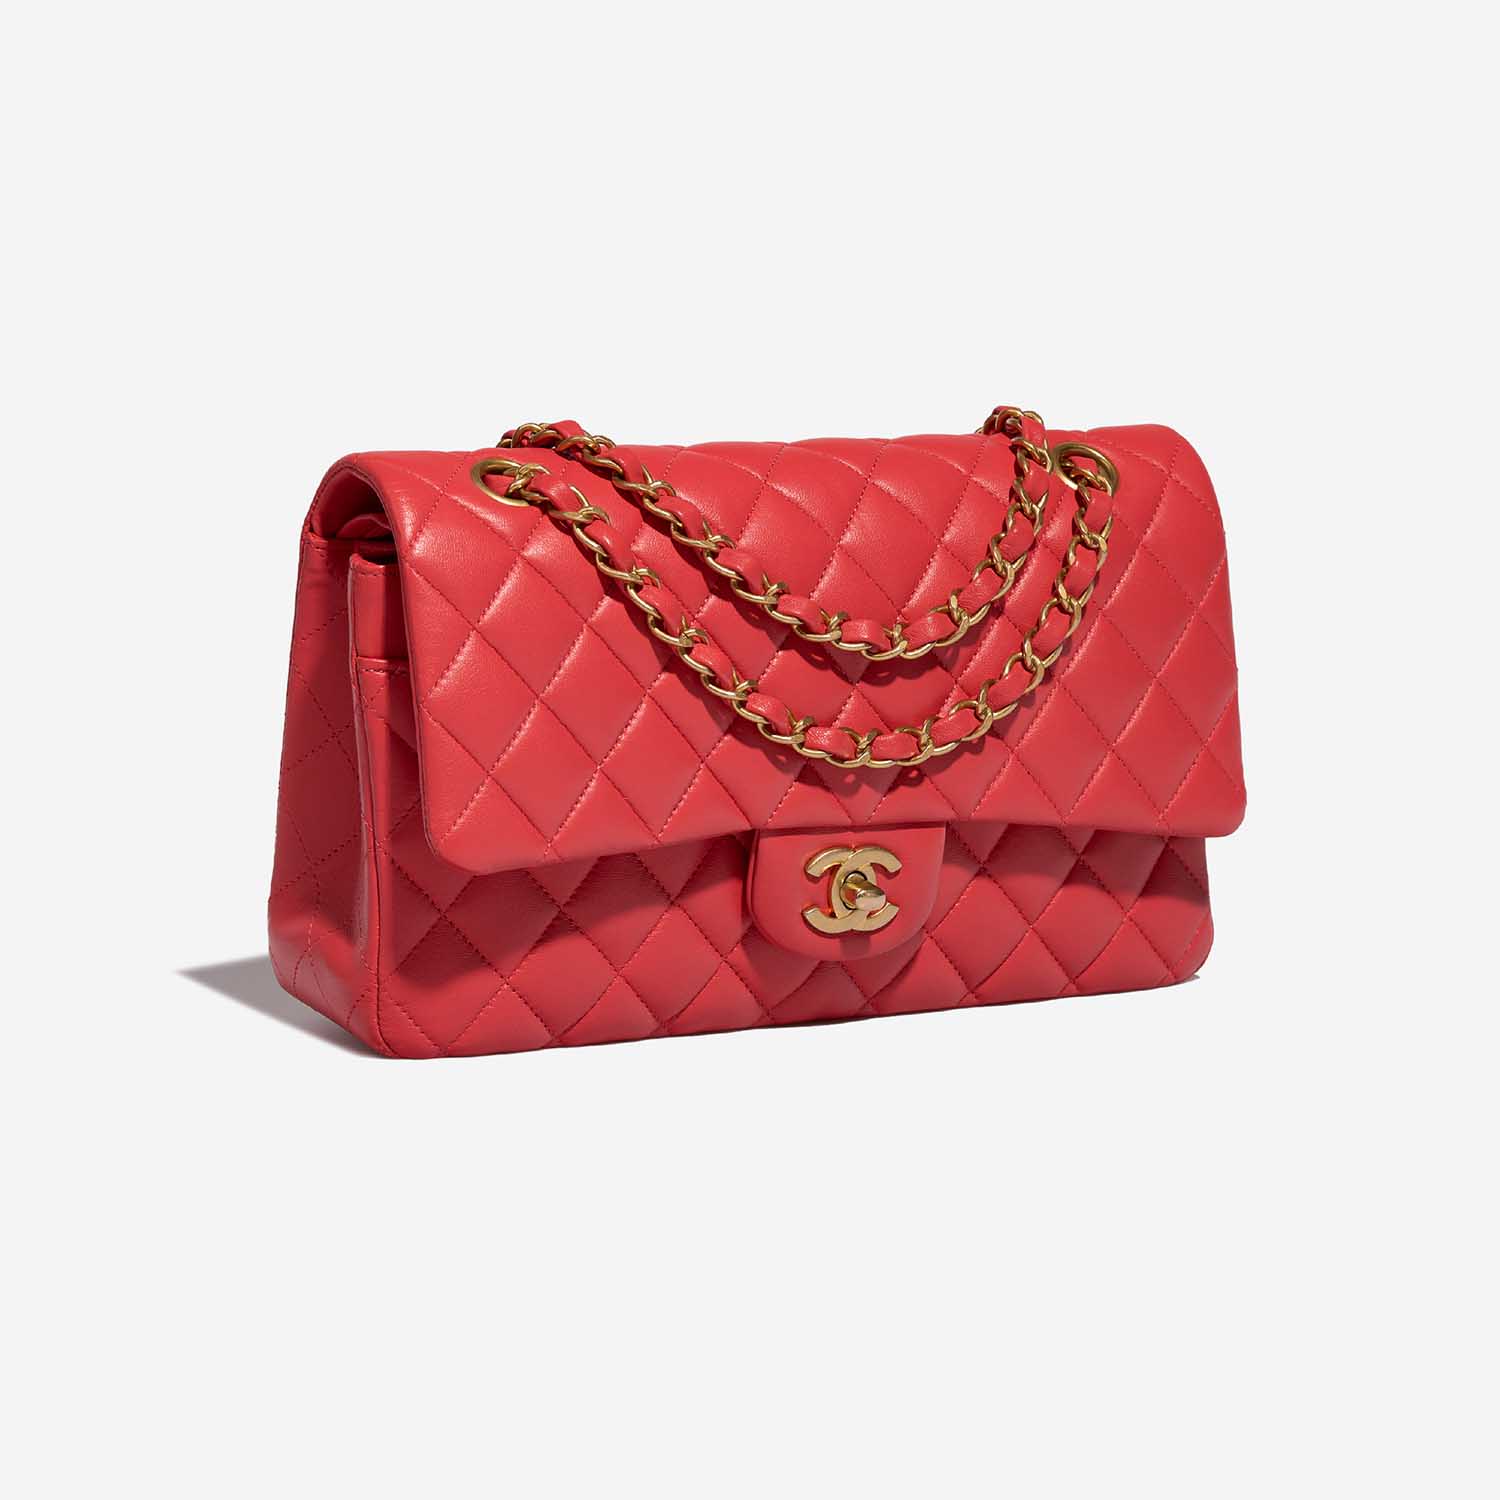 CHanel Timeless Medium Red Side Front | Verkaufen Sie Ihre Designer-Tasche auf Saclab.com